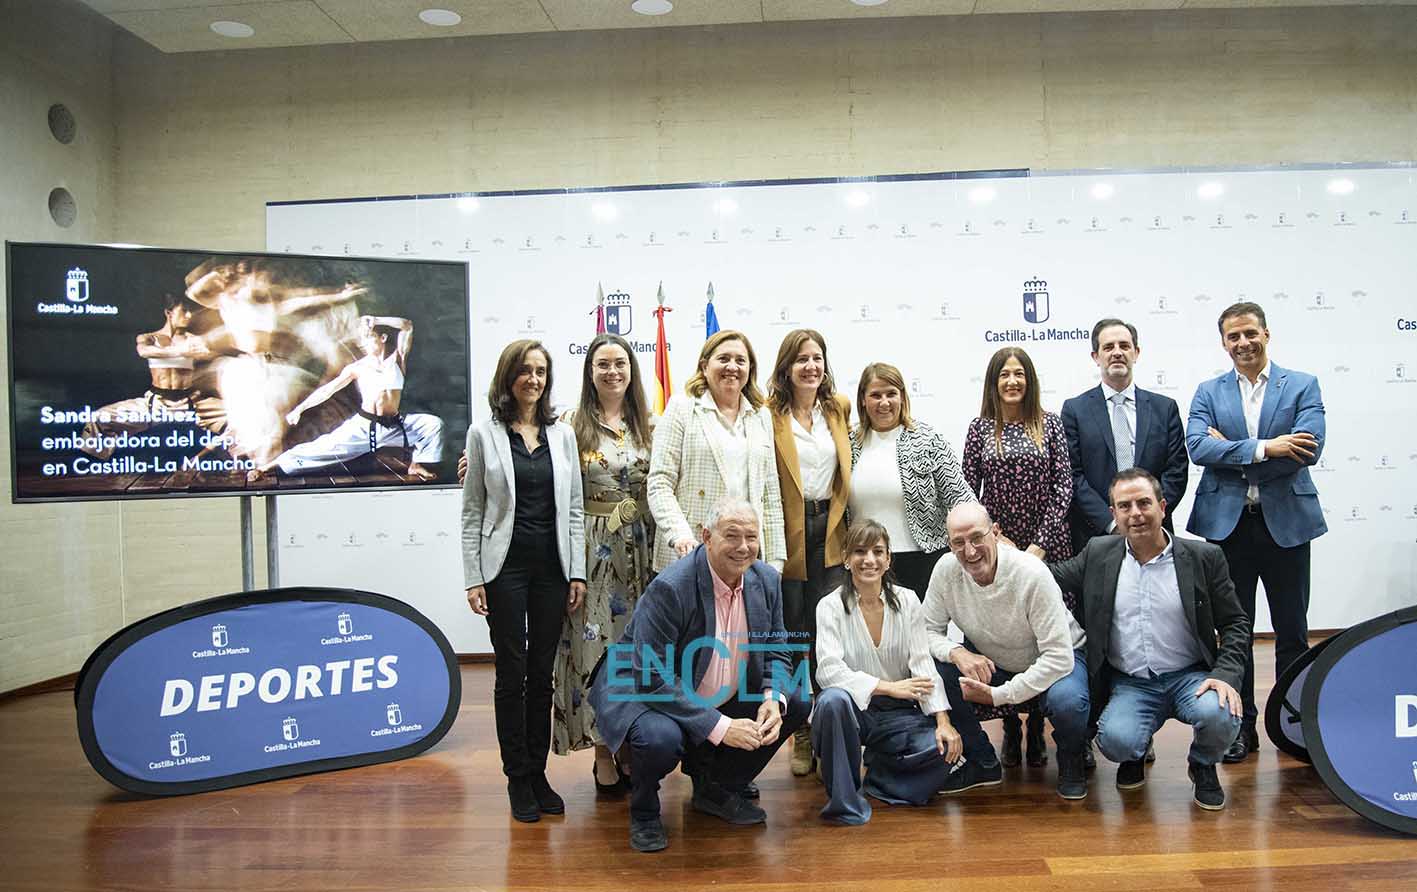 Foto de familia del acto oficial del nombramiento de Sandra Sánchez como embajadora del deporte en CLM. Foto: Rebeca Arango.